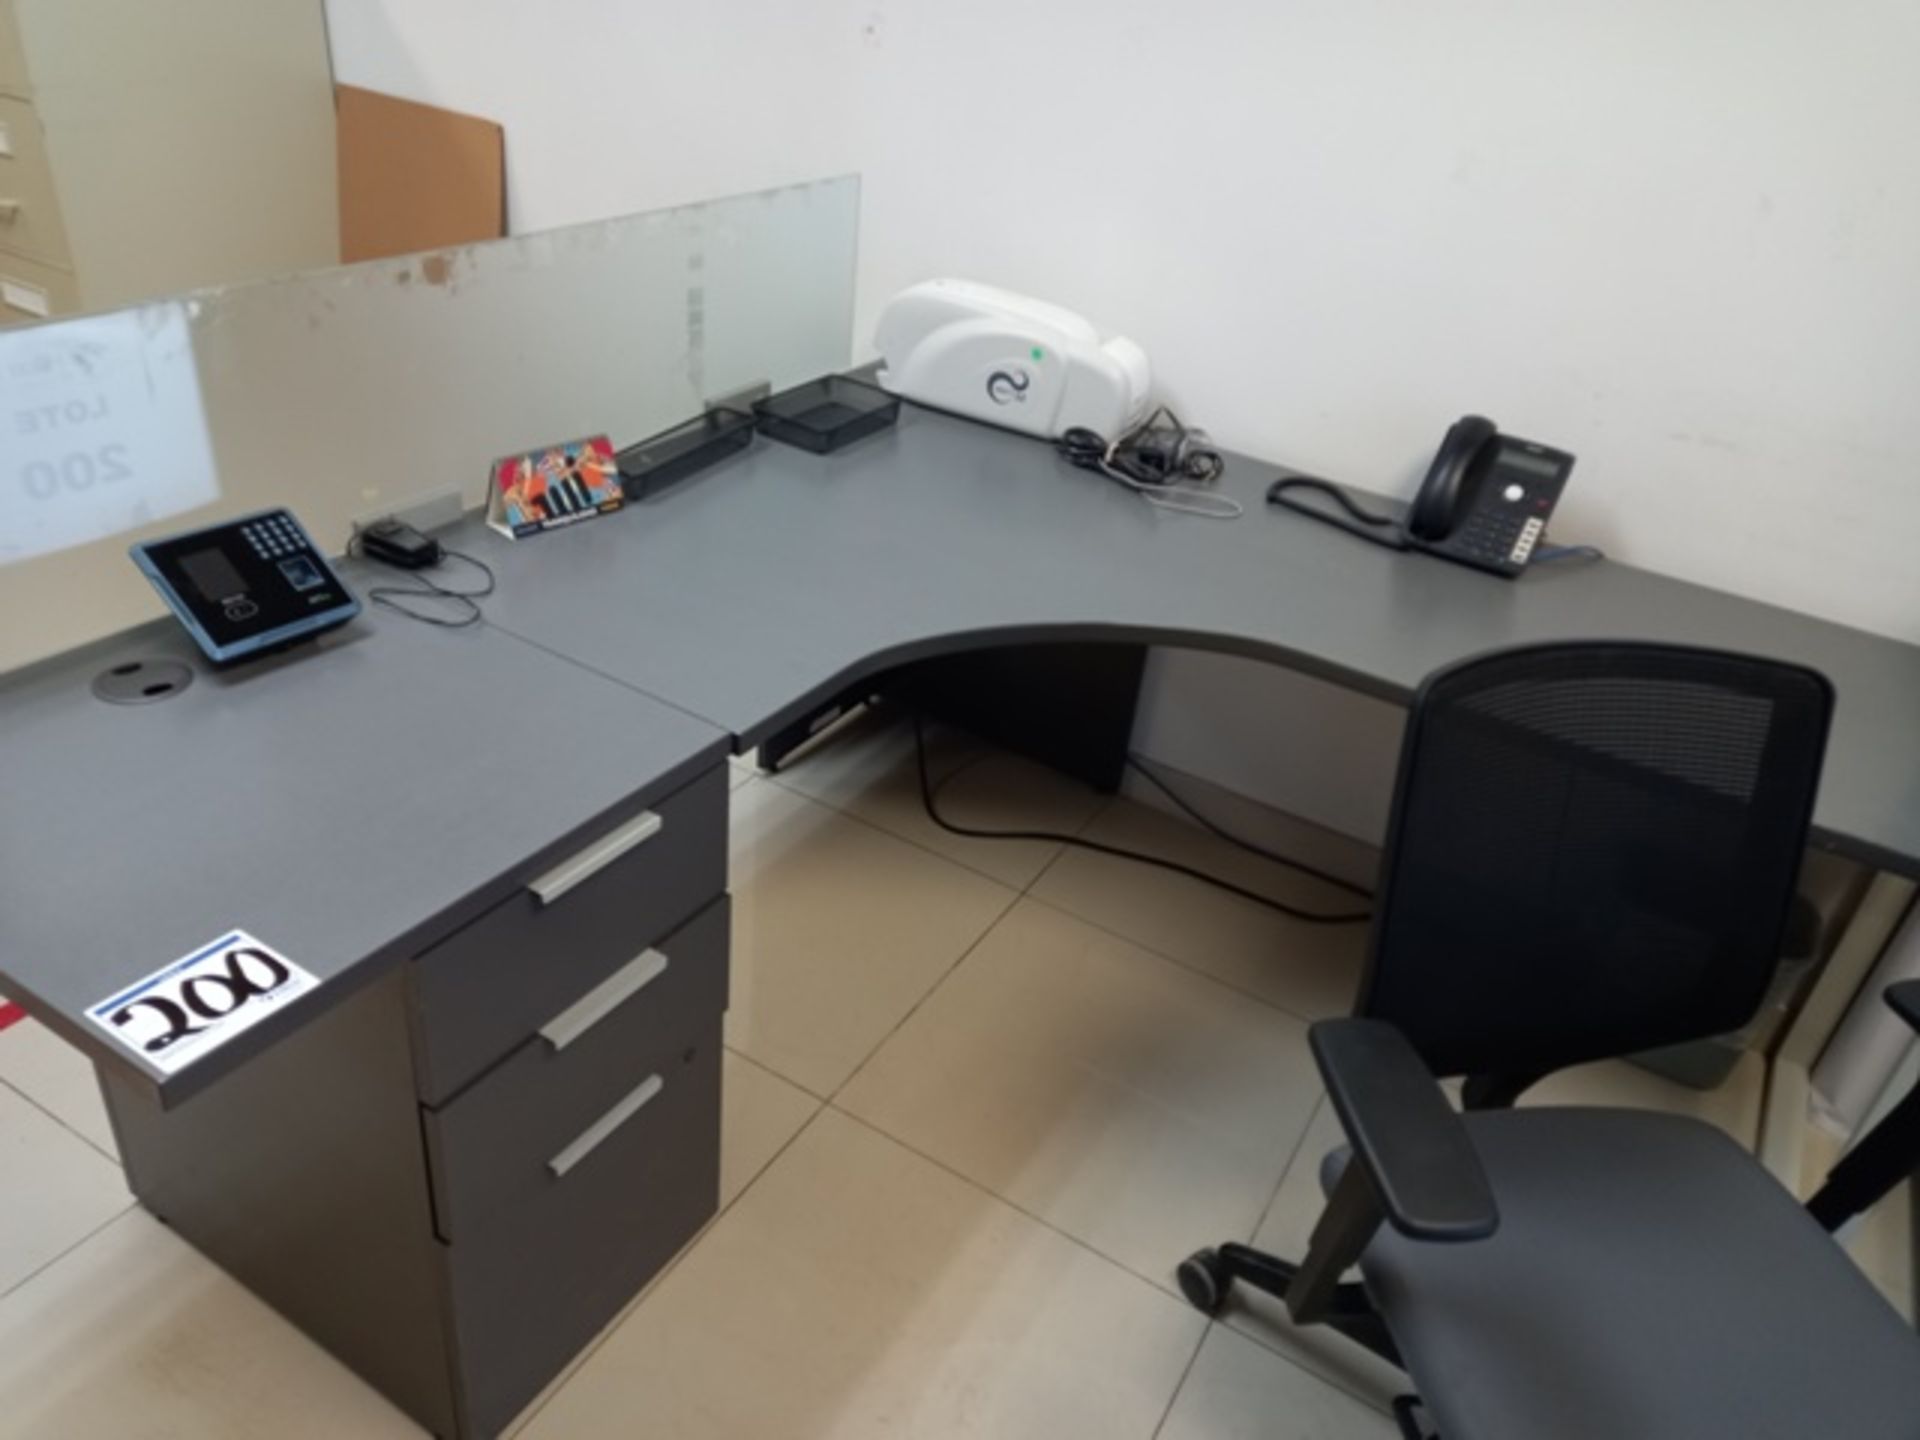 (44) Office Furniture Consisting Of: (1) 60 Inch Samsung TV, (6) L Desks, (6) Simple Desks & more - Image 7 of 25